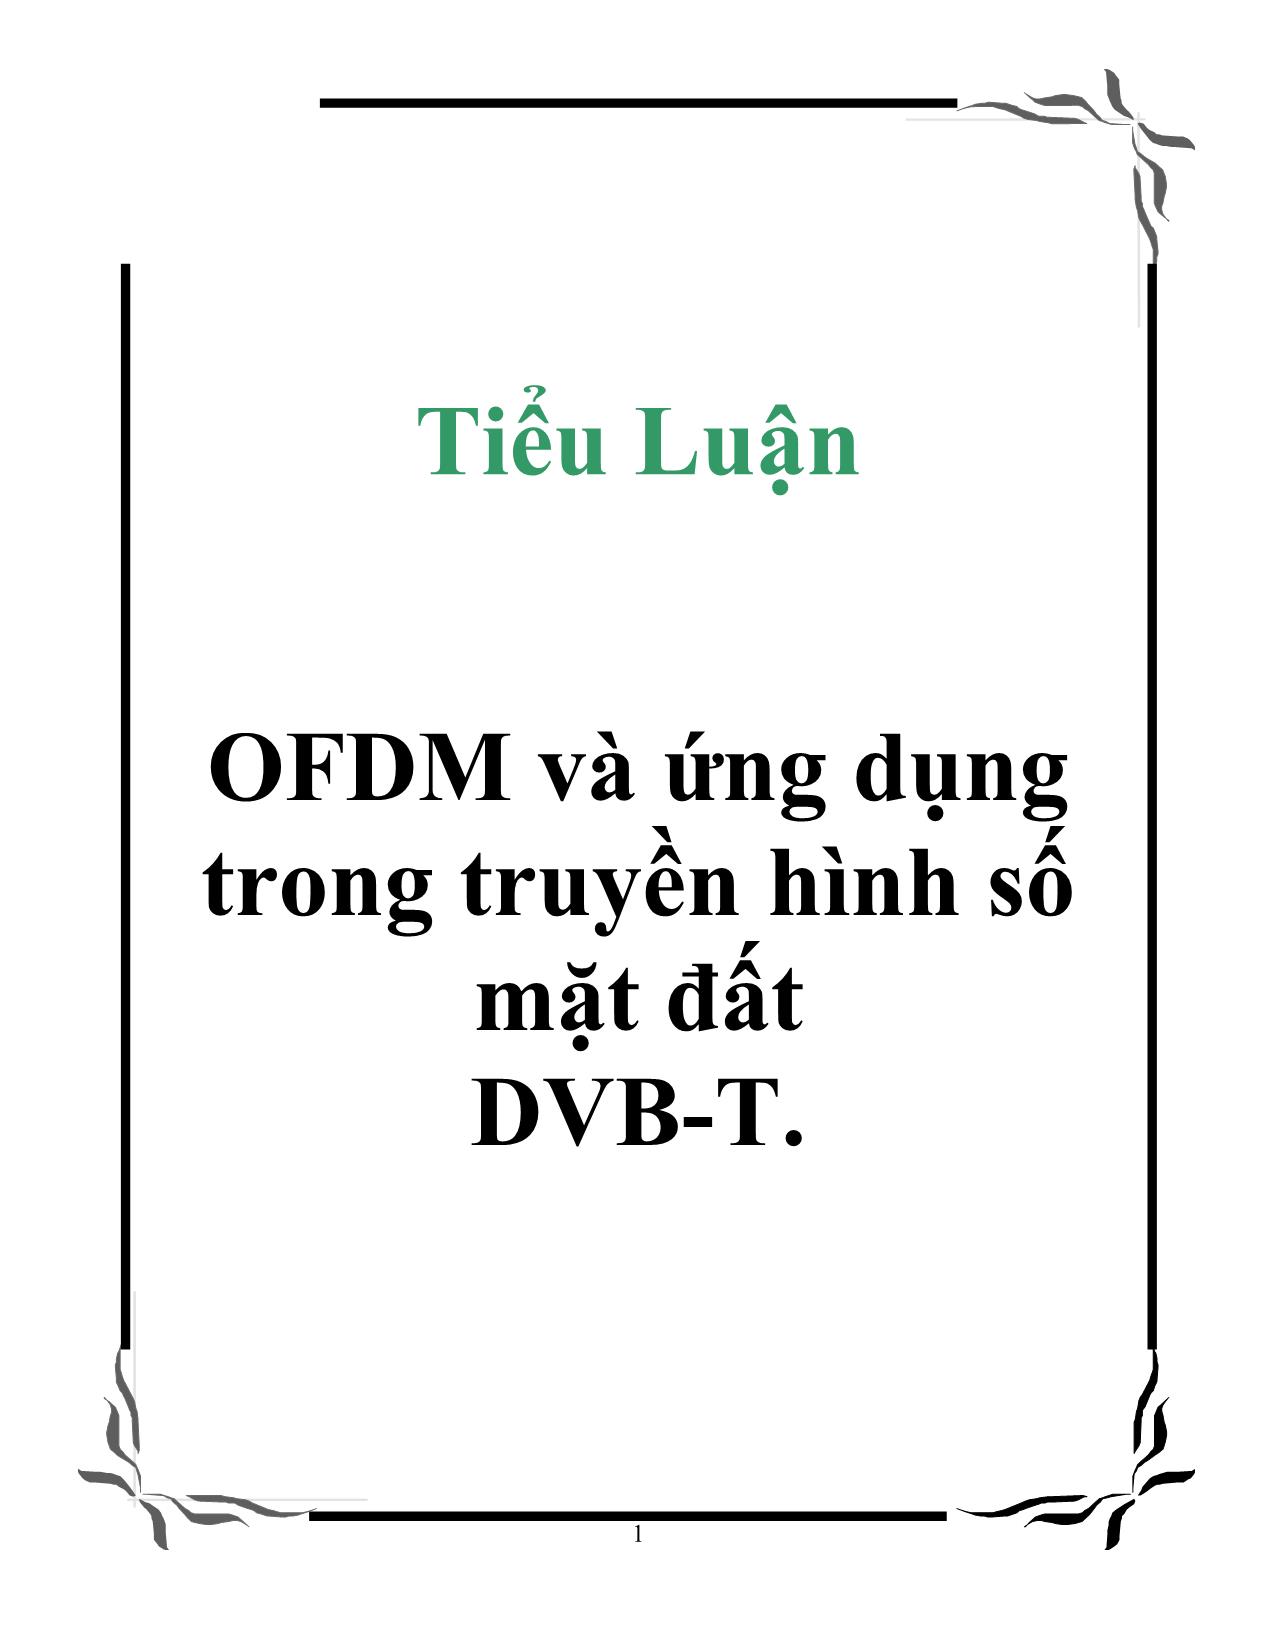 Tiểu luận OFDM và ứng dụng trong truyền hình số mặt đất DVB-T trang 1